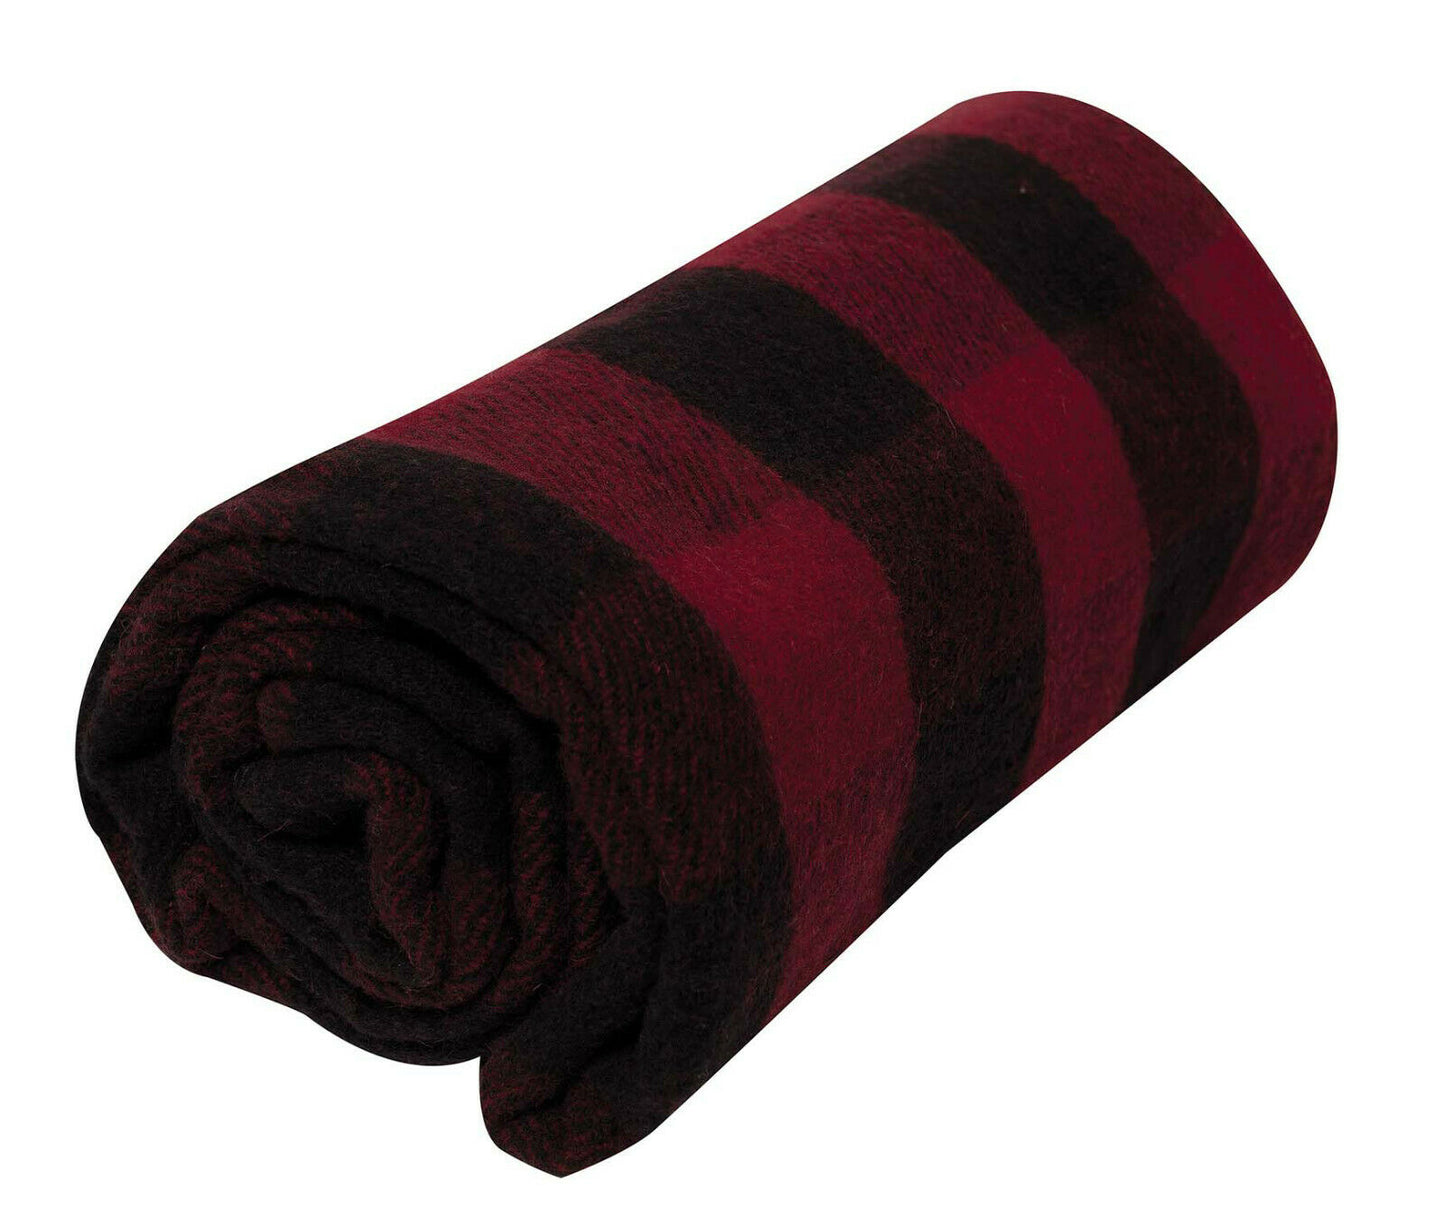 Rothco Plaid Wool Blanket 62"x 80"